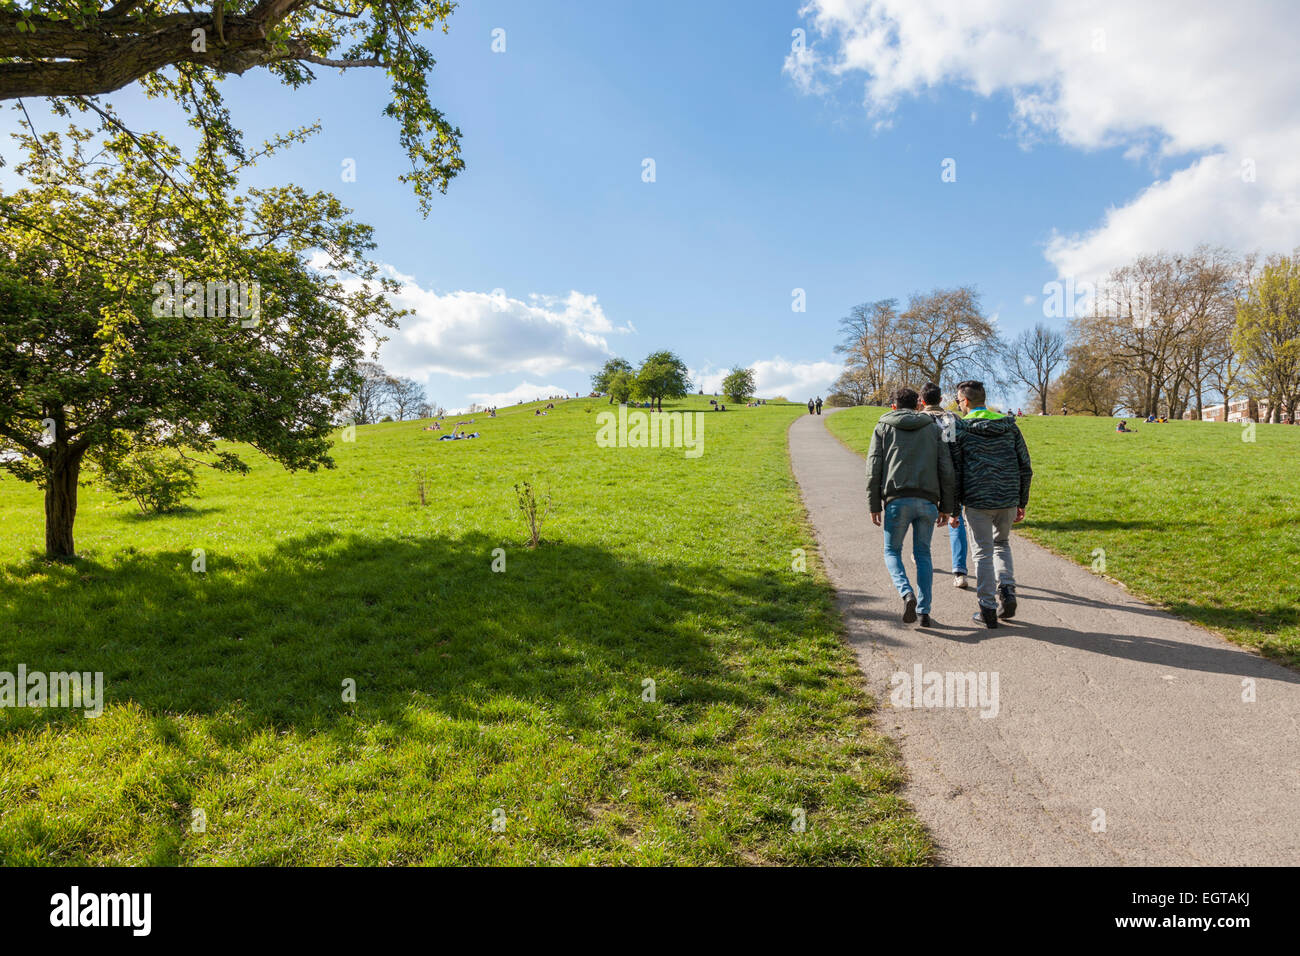 Les gens à pied le long d'un chemin dans un parc. Primrose Hill, London, England, UK Banque D'Images